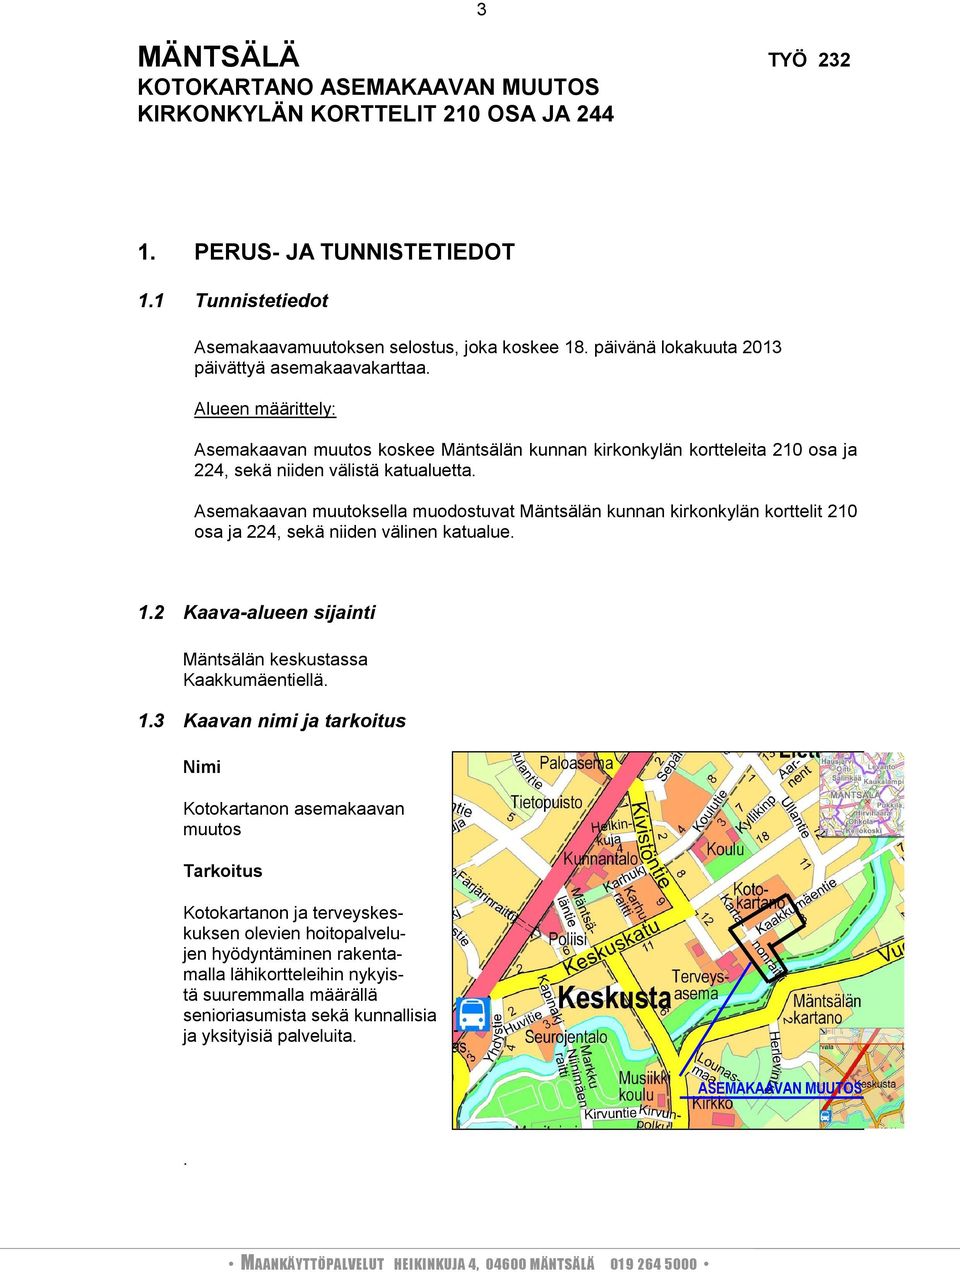 Asemakaavan muutoksella muodostuvat Mäntsälän kunnan kirkonkylän korttelit 210 osa ja 224, sekä niiden välinen katualue. 1.